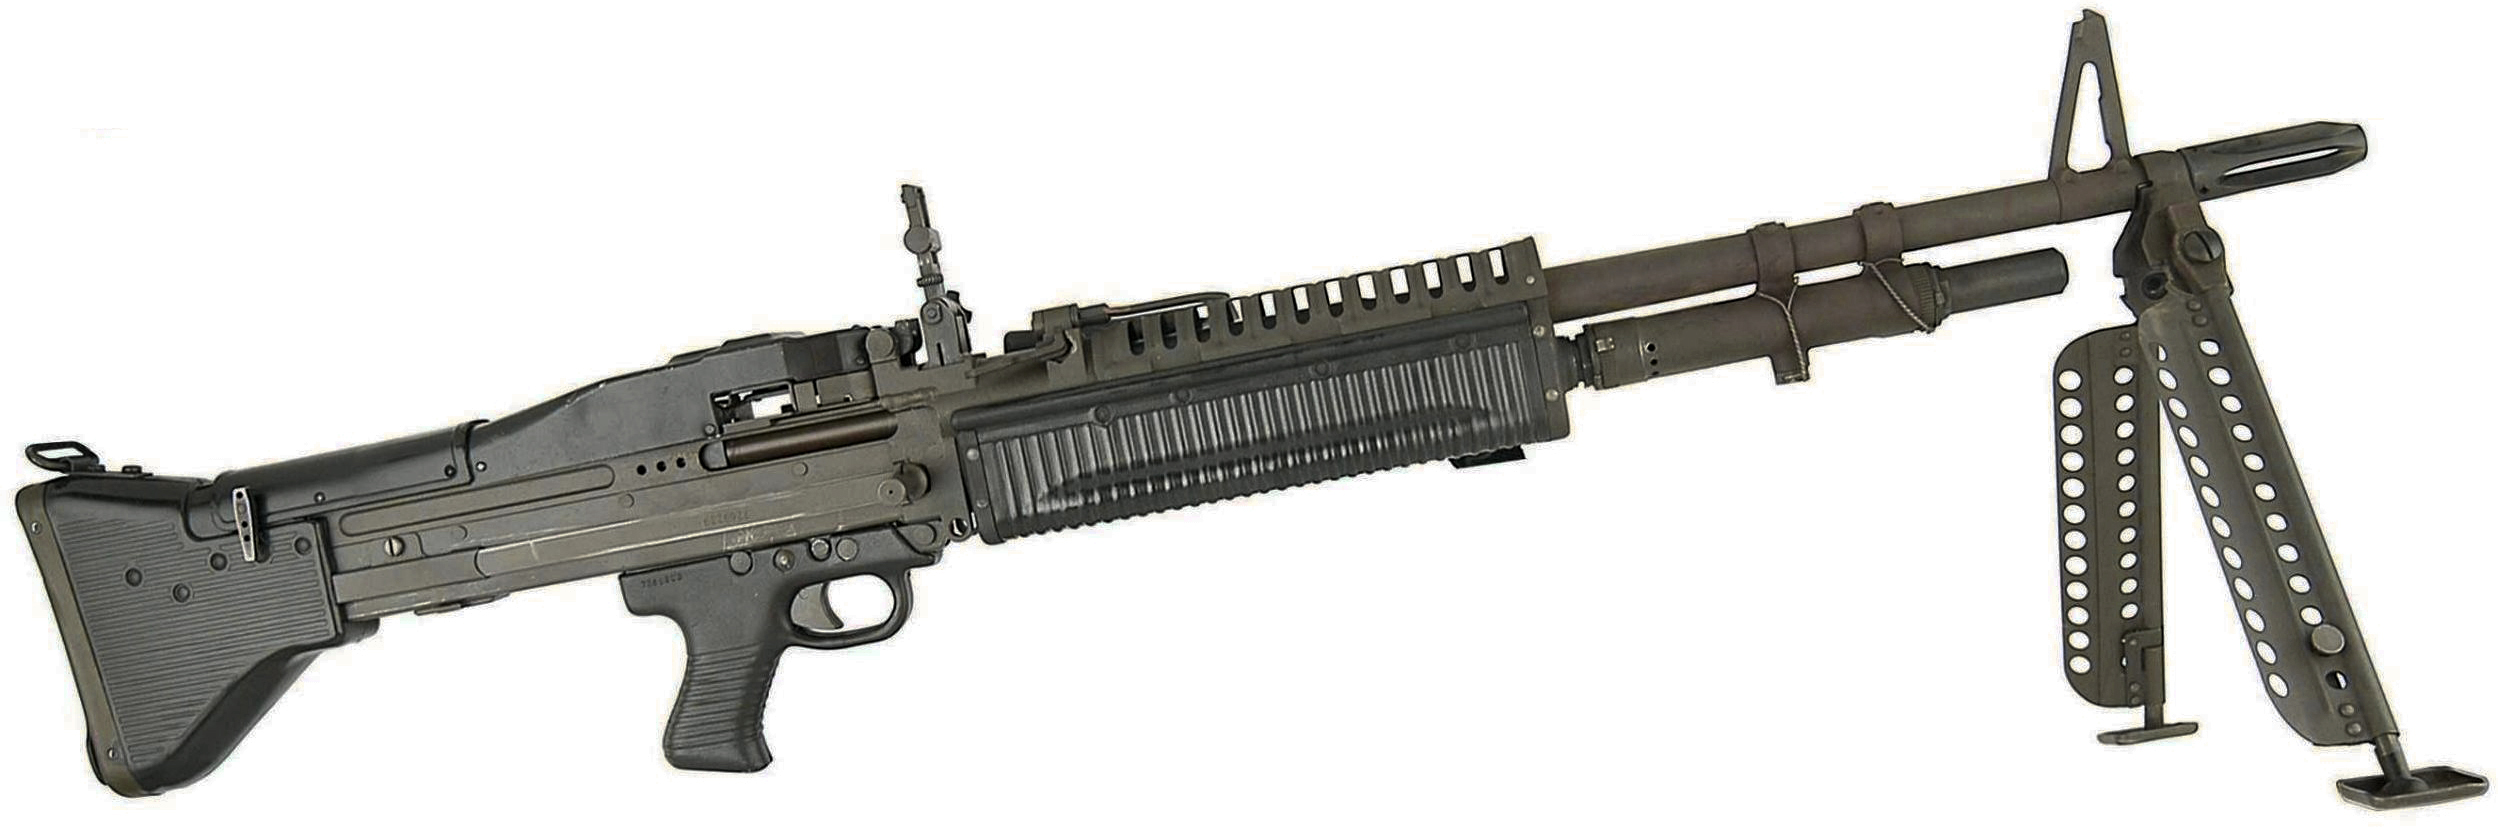 M60 machine gun 7.62x51mm NATO